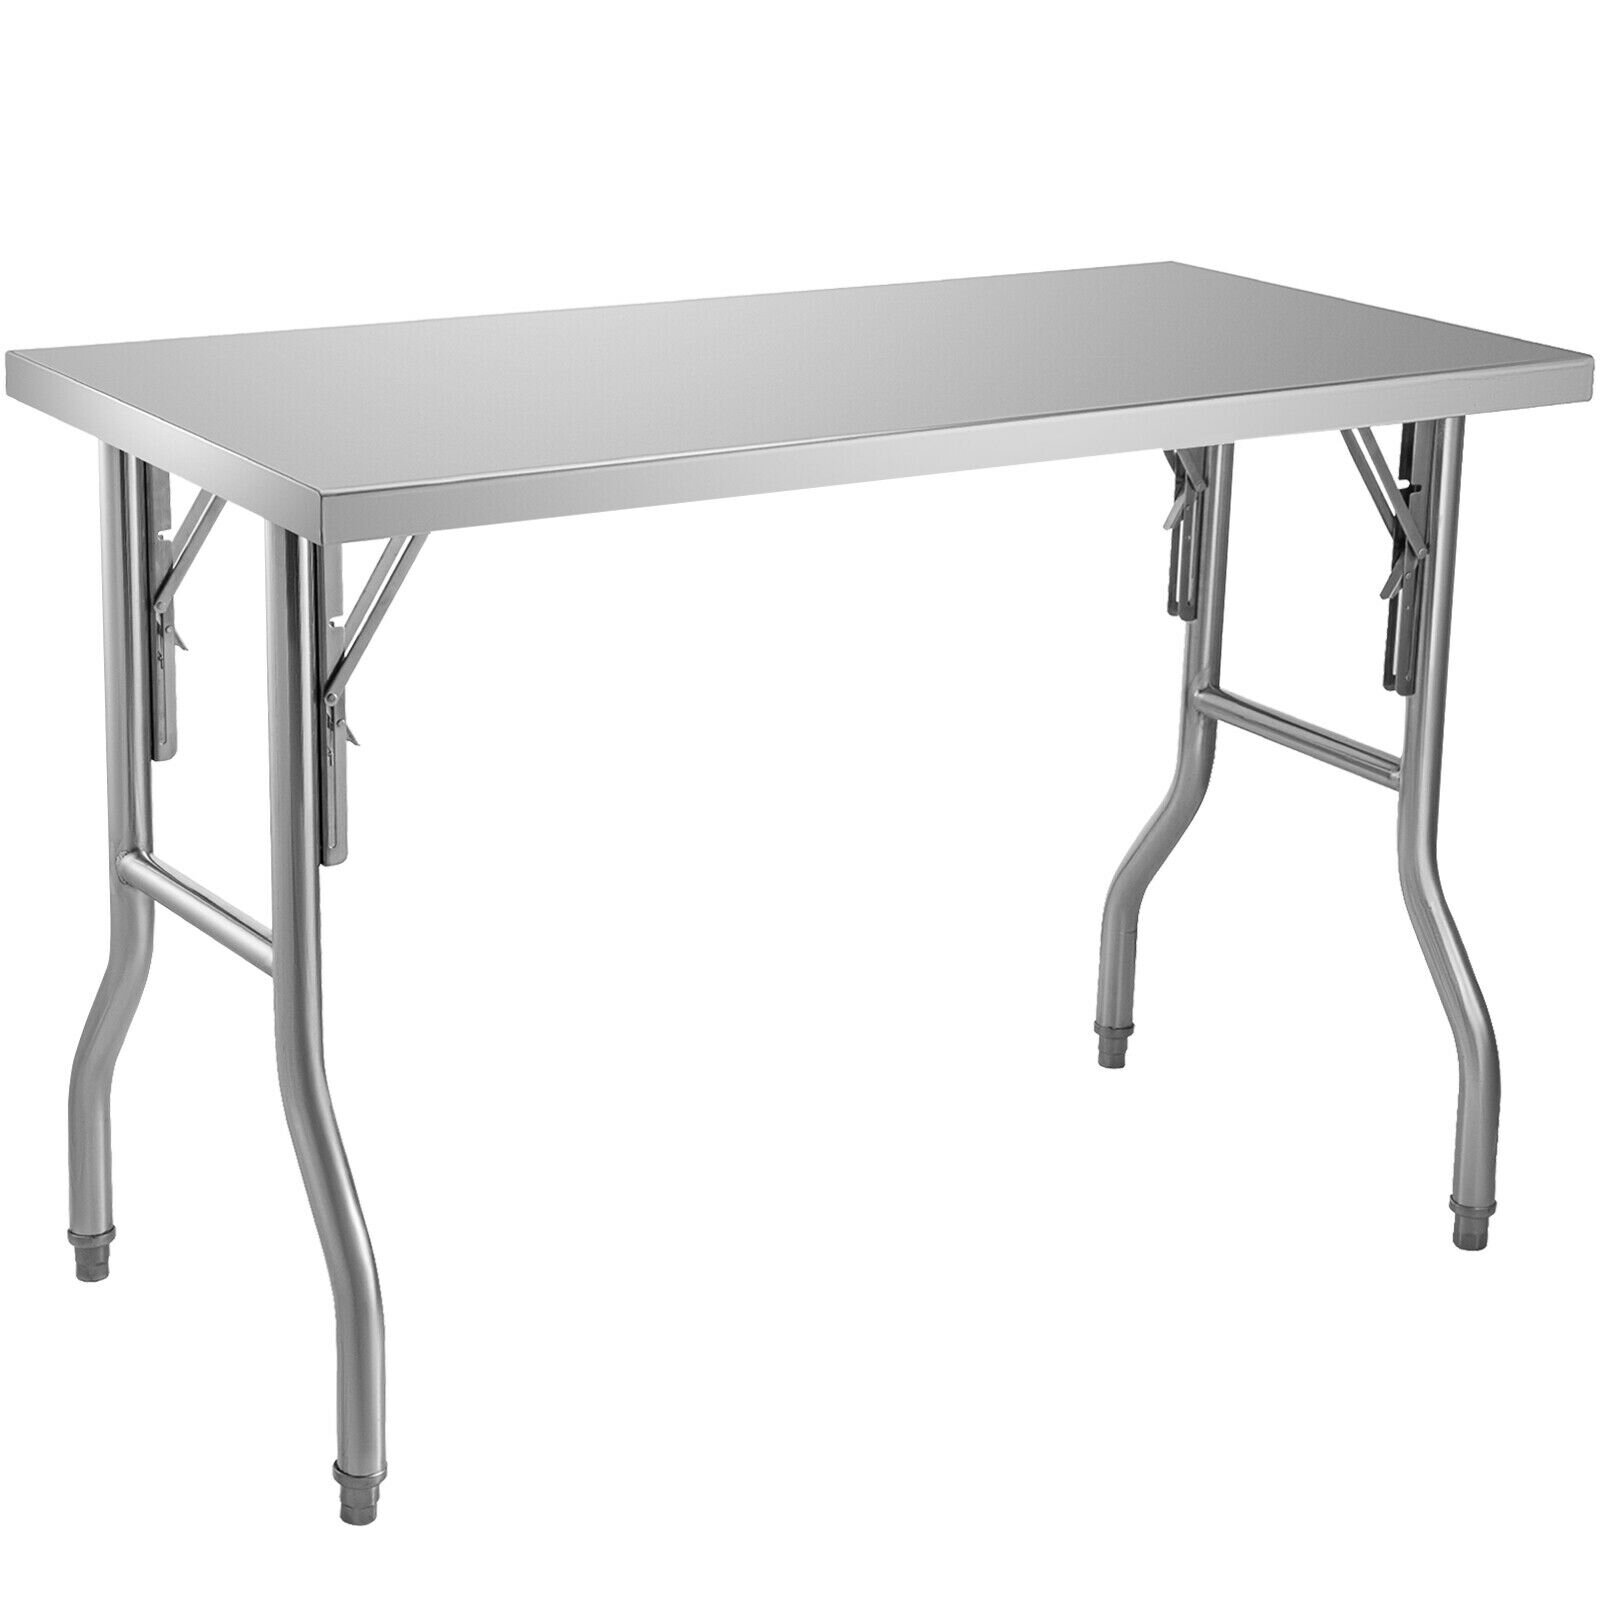 https://assets.wfcdn.com/im/95766794/compr-r85/1624/162415973/vevor-stainless-steel-48-l-x-24-w-x-335-h-adjustable-work-tables.jpg